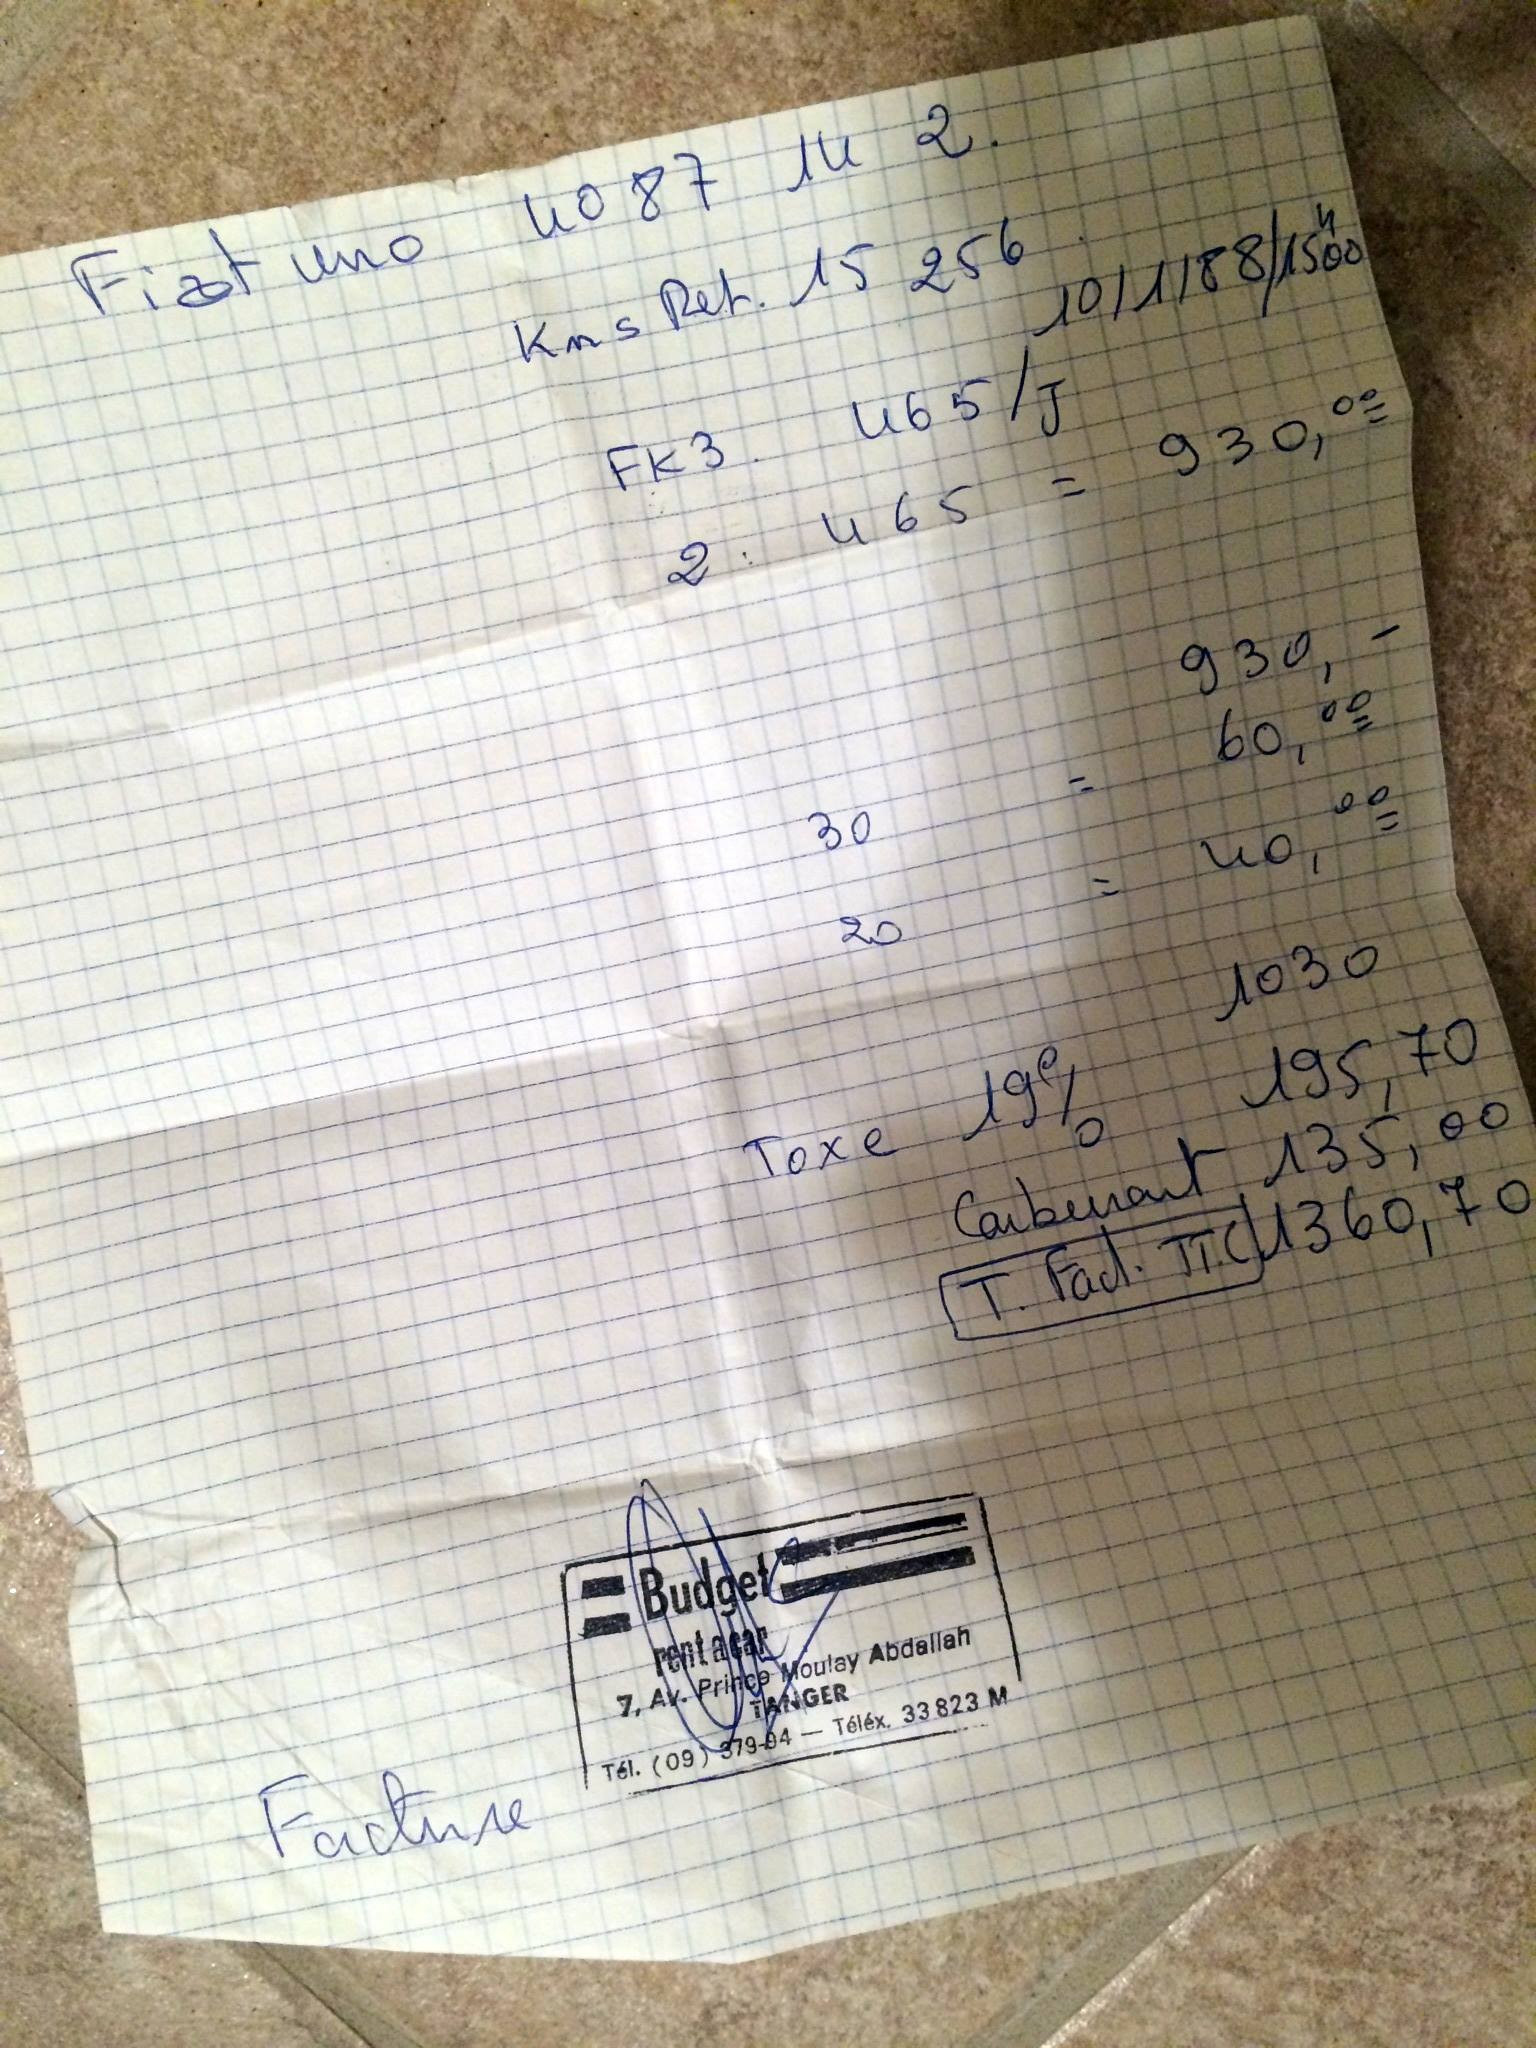 My handwritten rental receipt for my Fiat Uno!